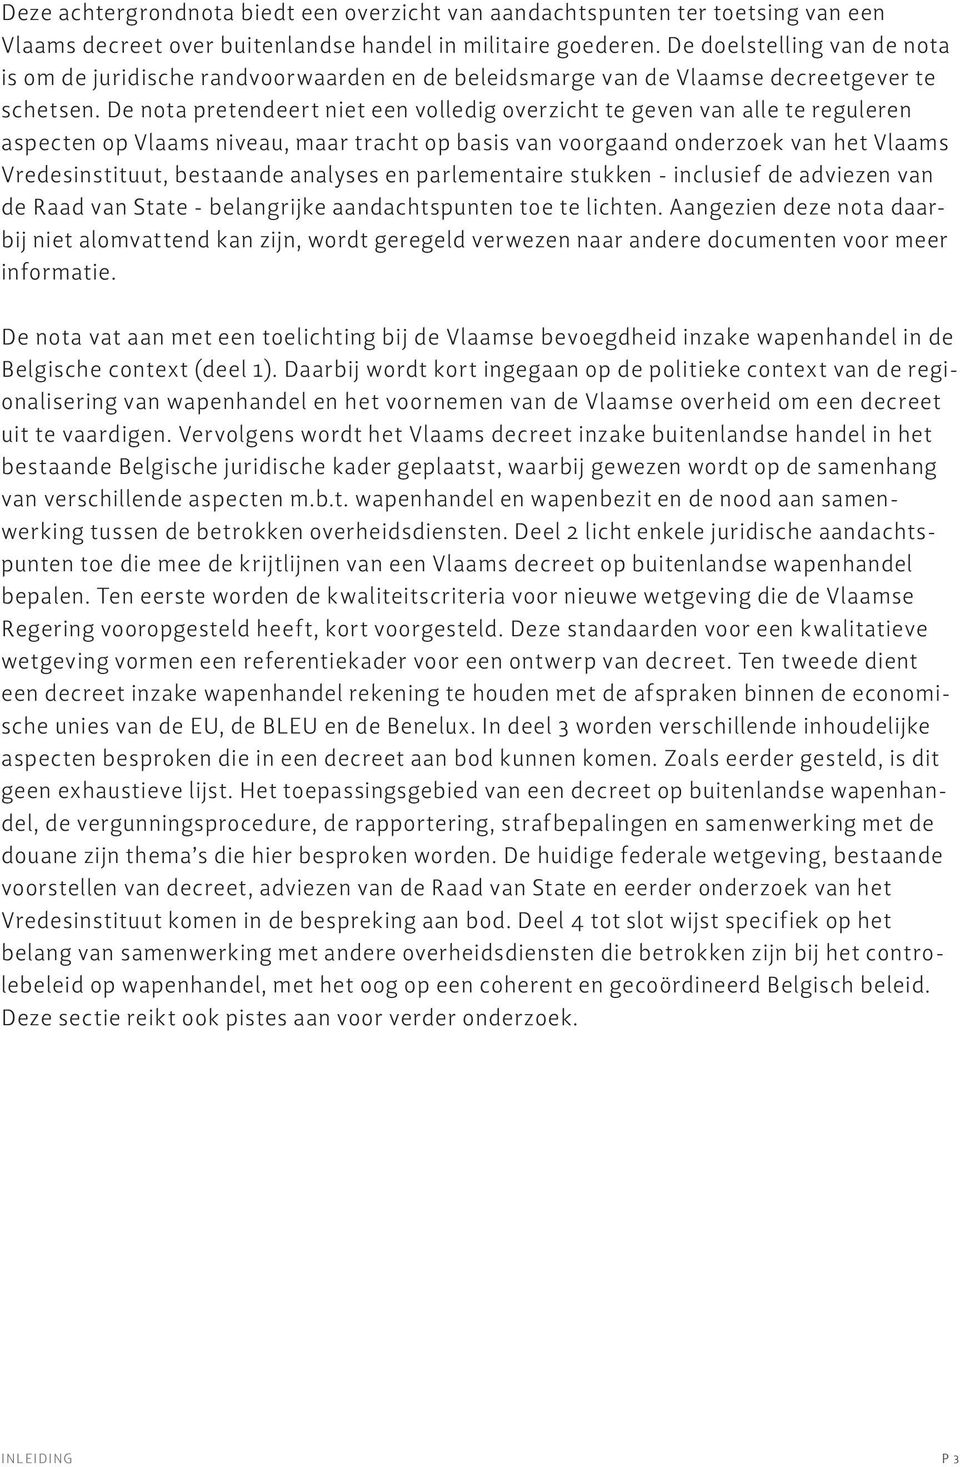 De nota pretendeert niet een volledig overzicht te geven van alle te reguleren aspecten op Vlaams niveau, maar tracht op basis van voorgaand onderzoek van het Vlaams Vredesinstituut, bestaande